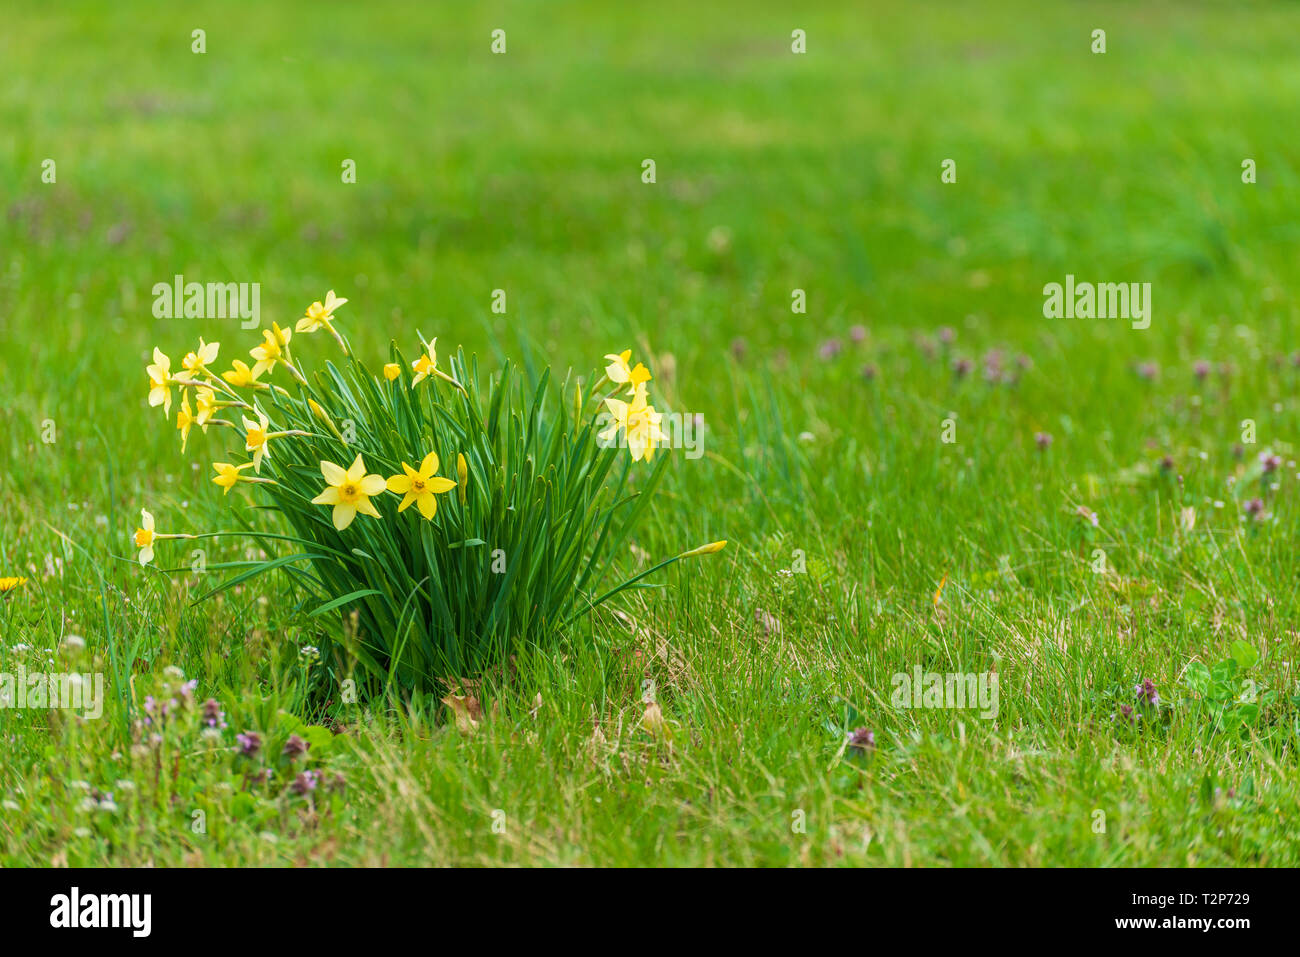 Horizontale Schuß von Frühlingsblumen in eine grüne Wiese mit Kopie Raum auf der rechten Seite. Stockfoto